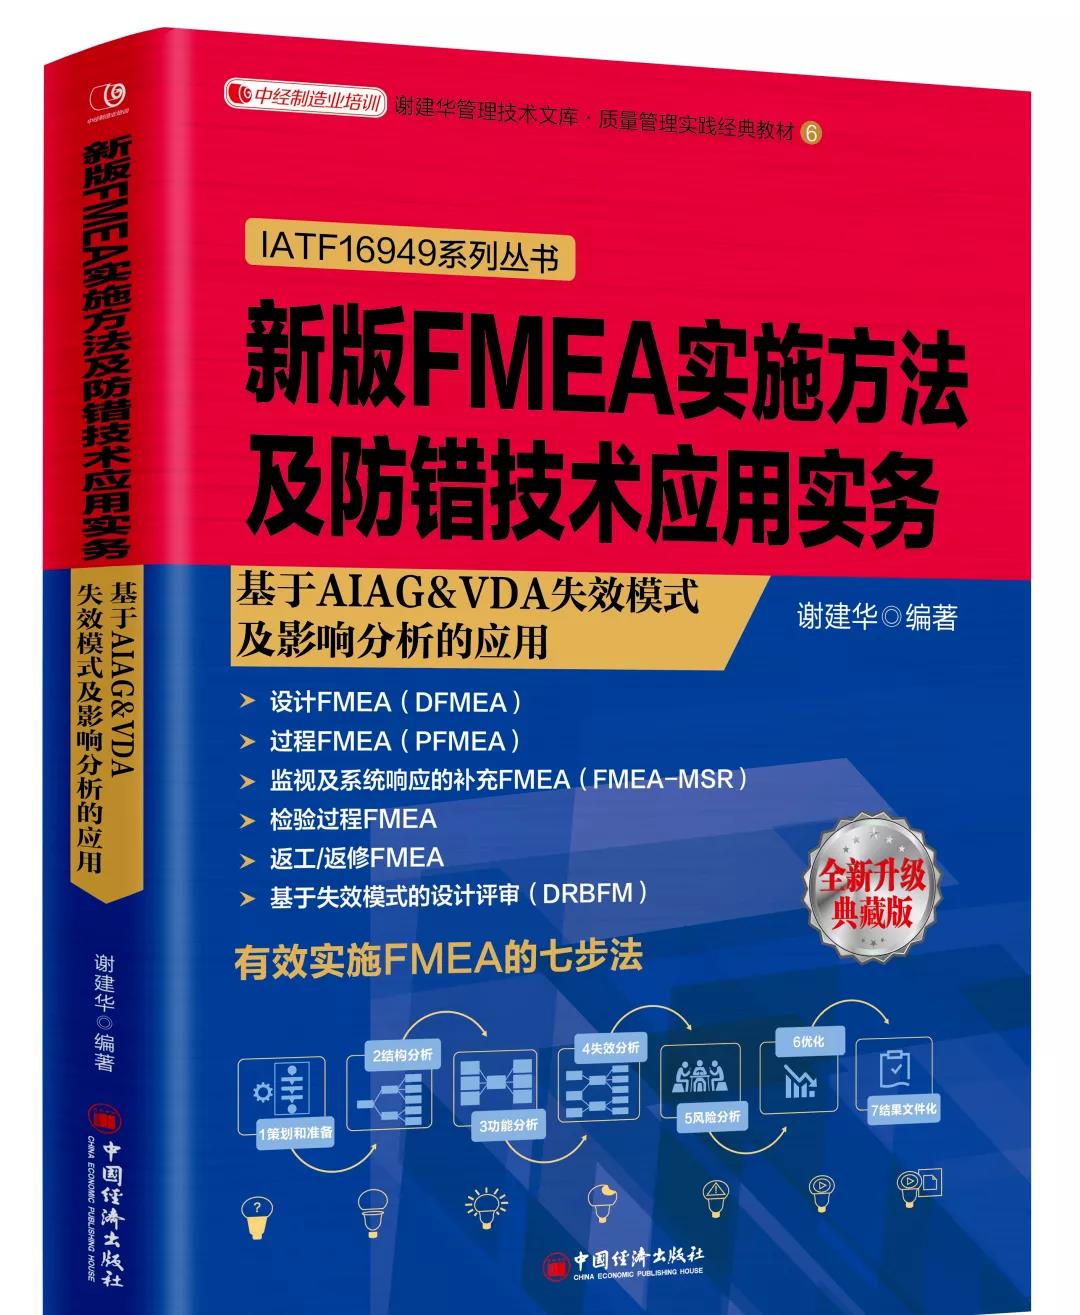 新书推荐-新版FMEA实施方法及防错技术应用实务